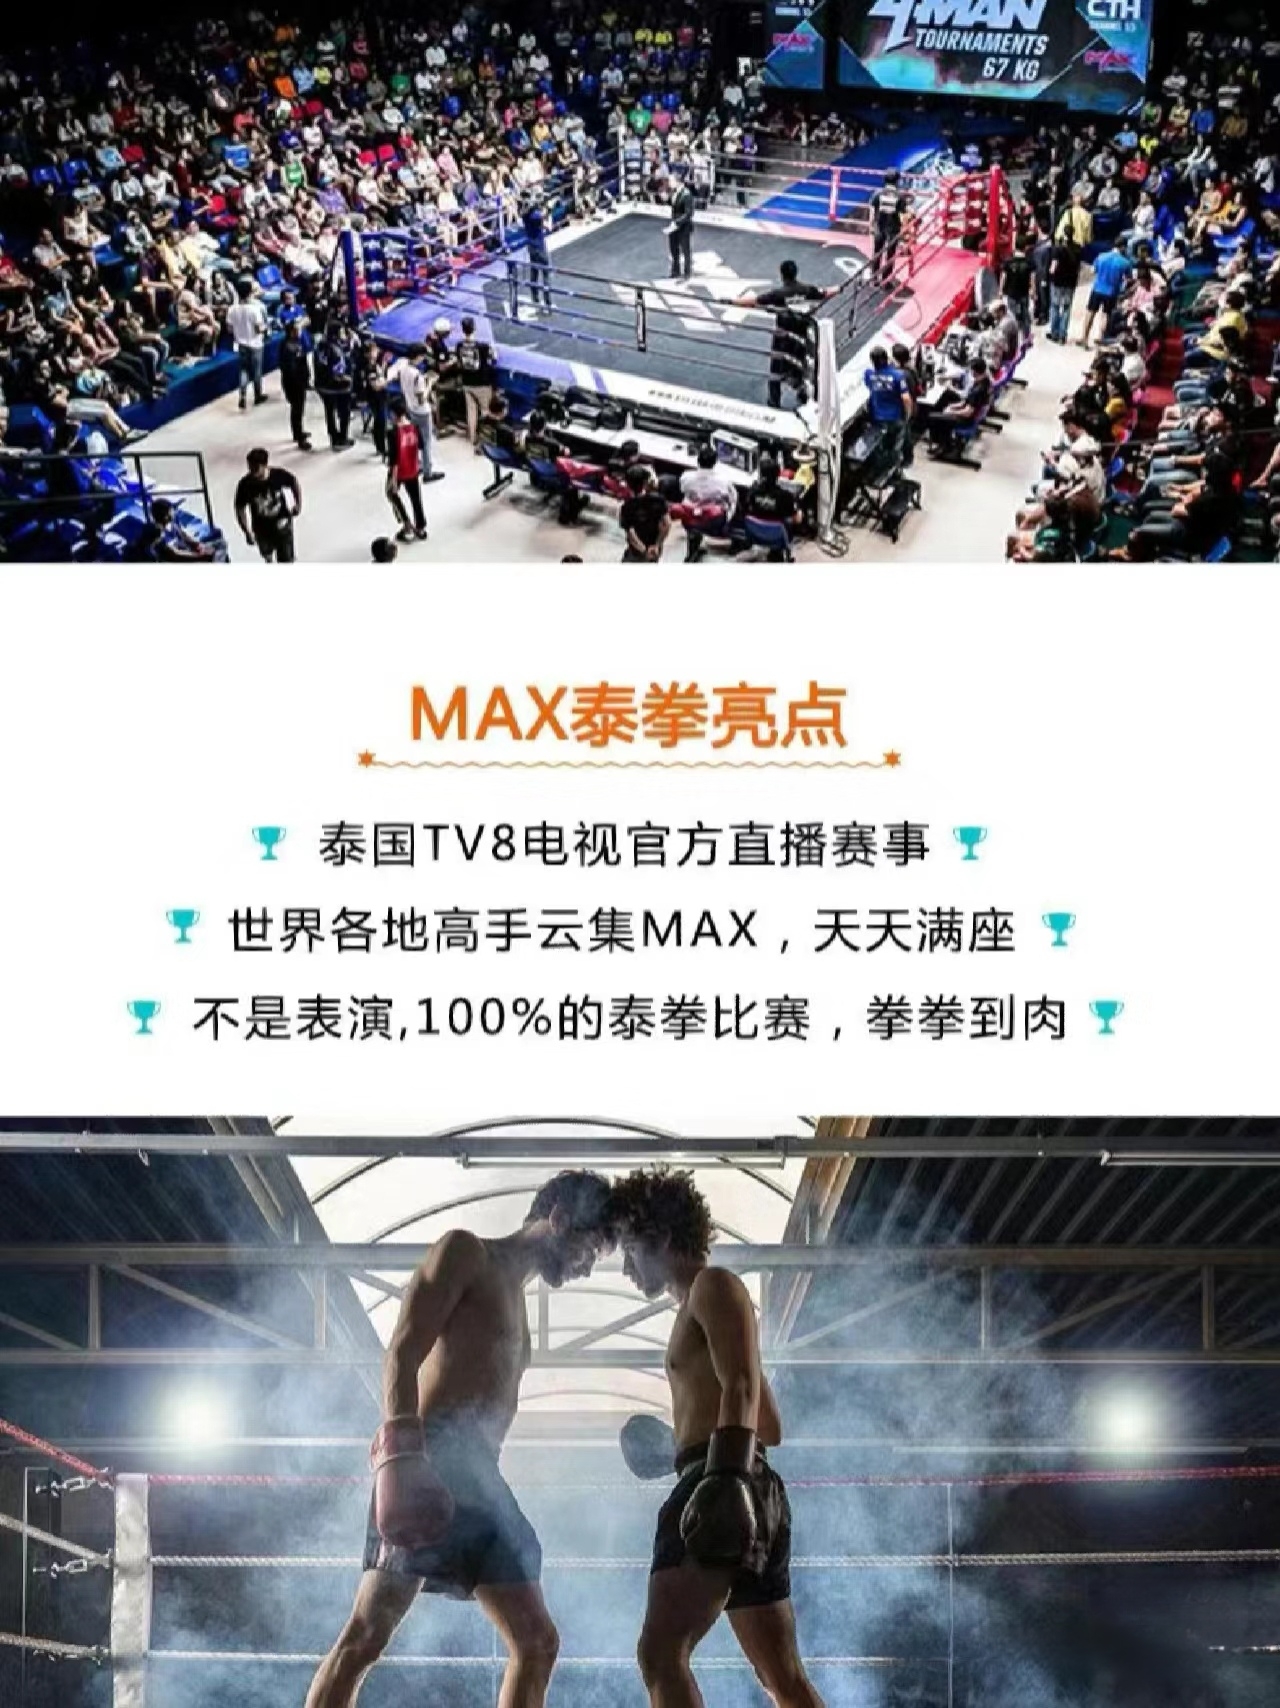 芭提雅有名的泰拳馆 Max Muay Thai